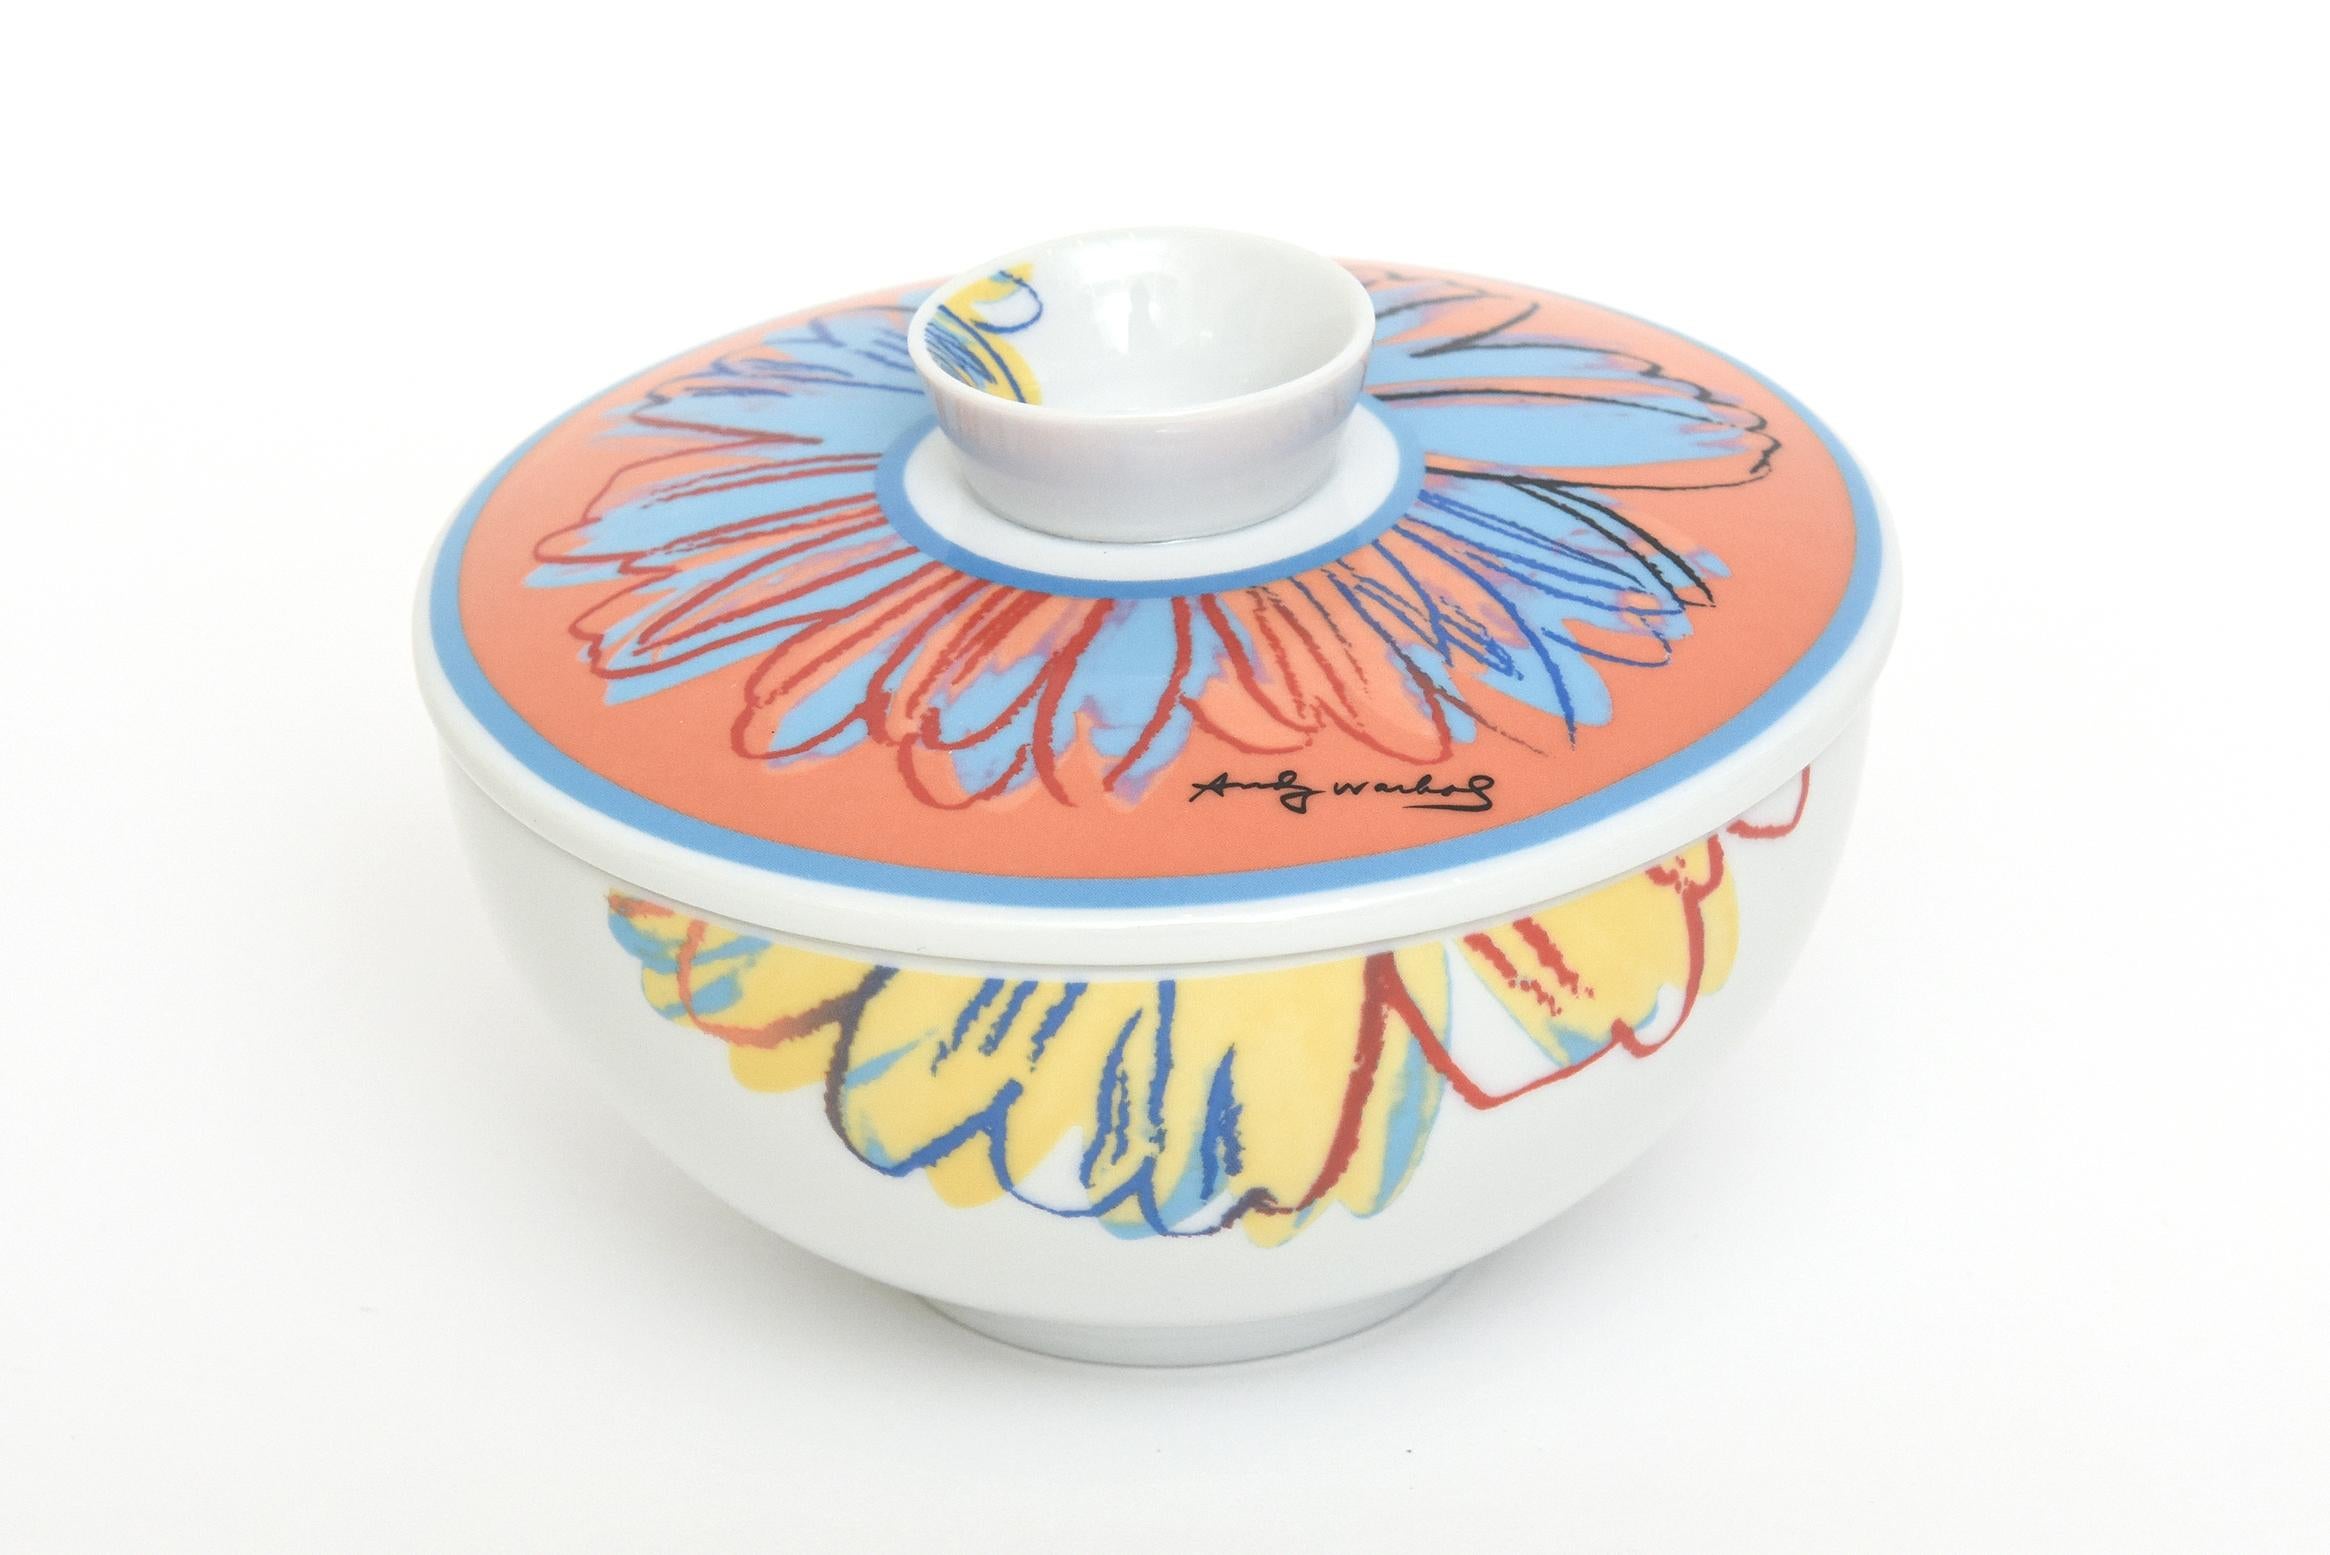 Rosenthal Studio Line Flower Porcelain Covered Sugar Bowl After Andy Warhol For Sale 2